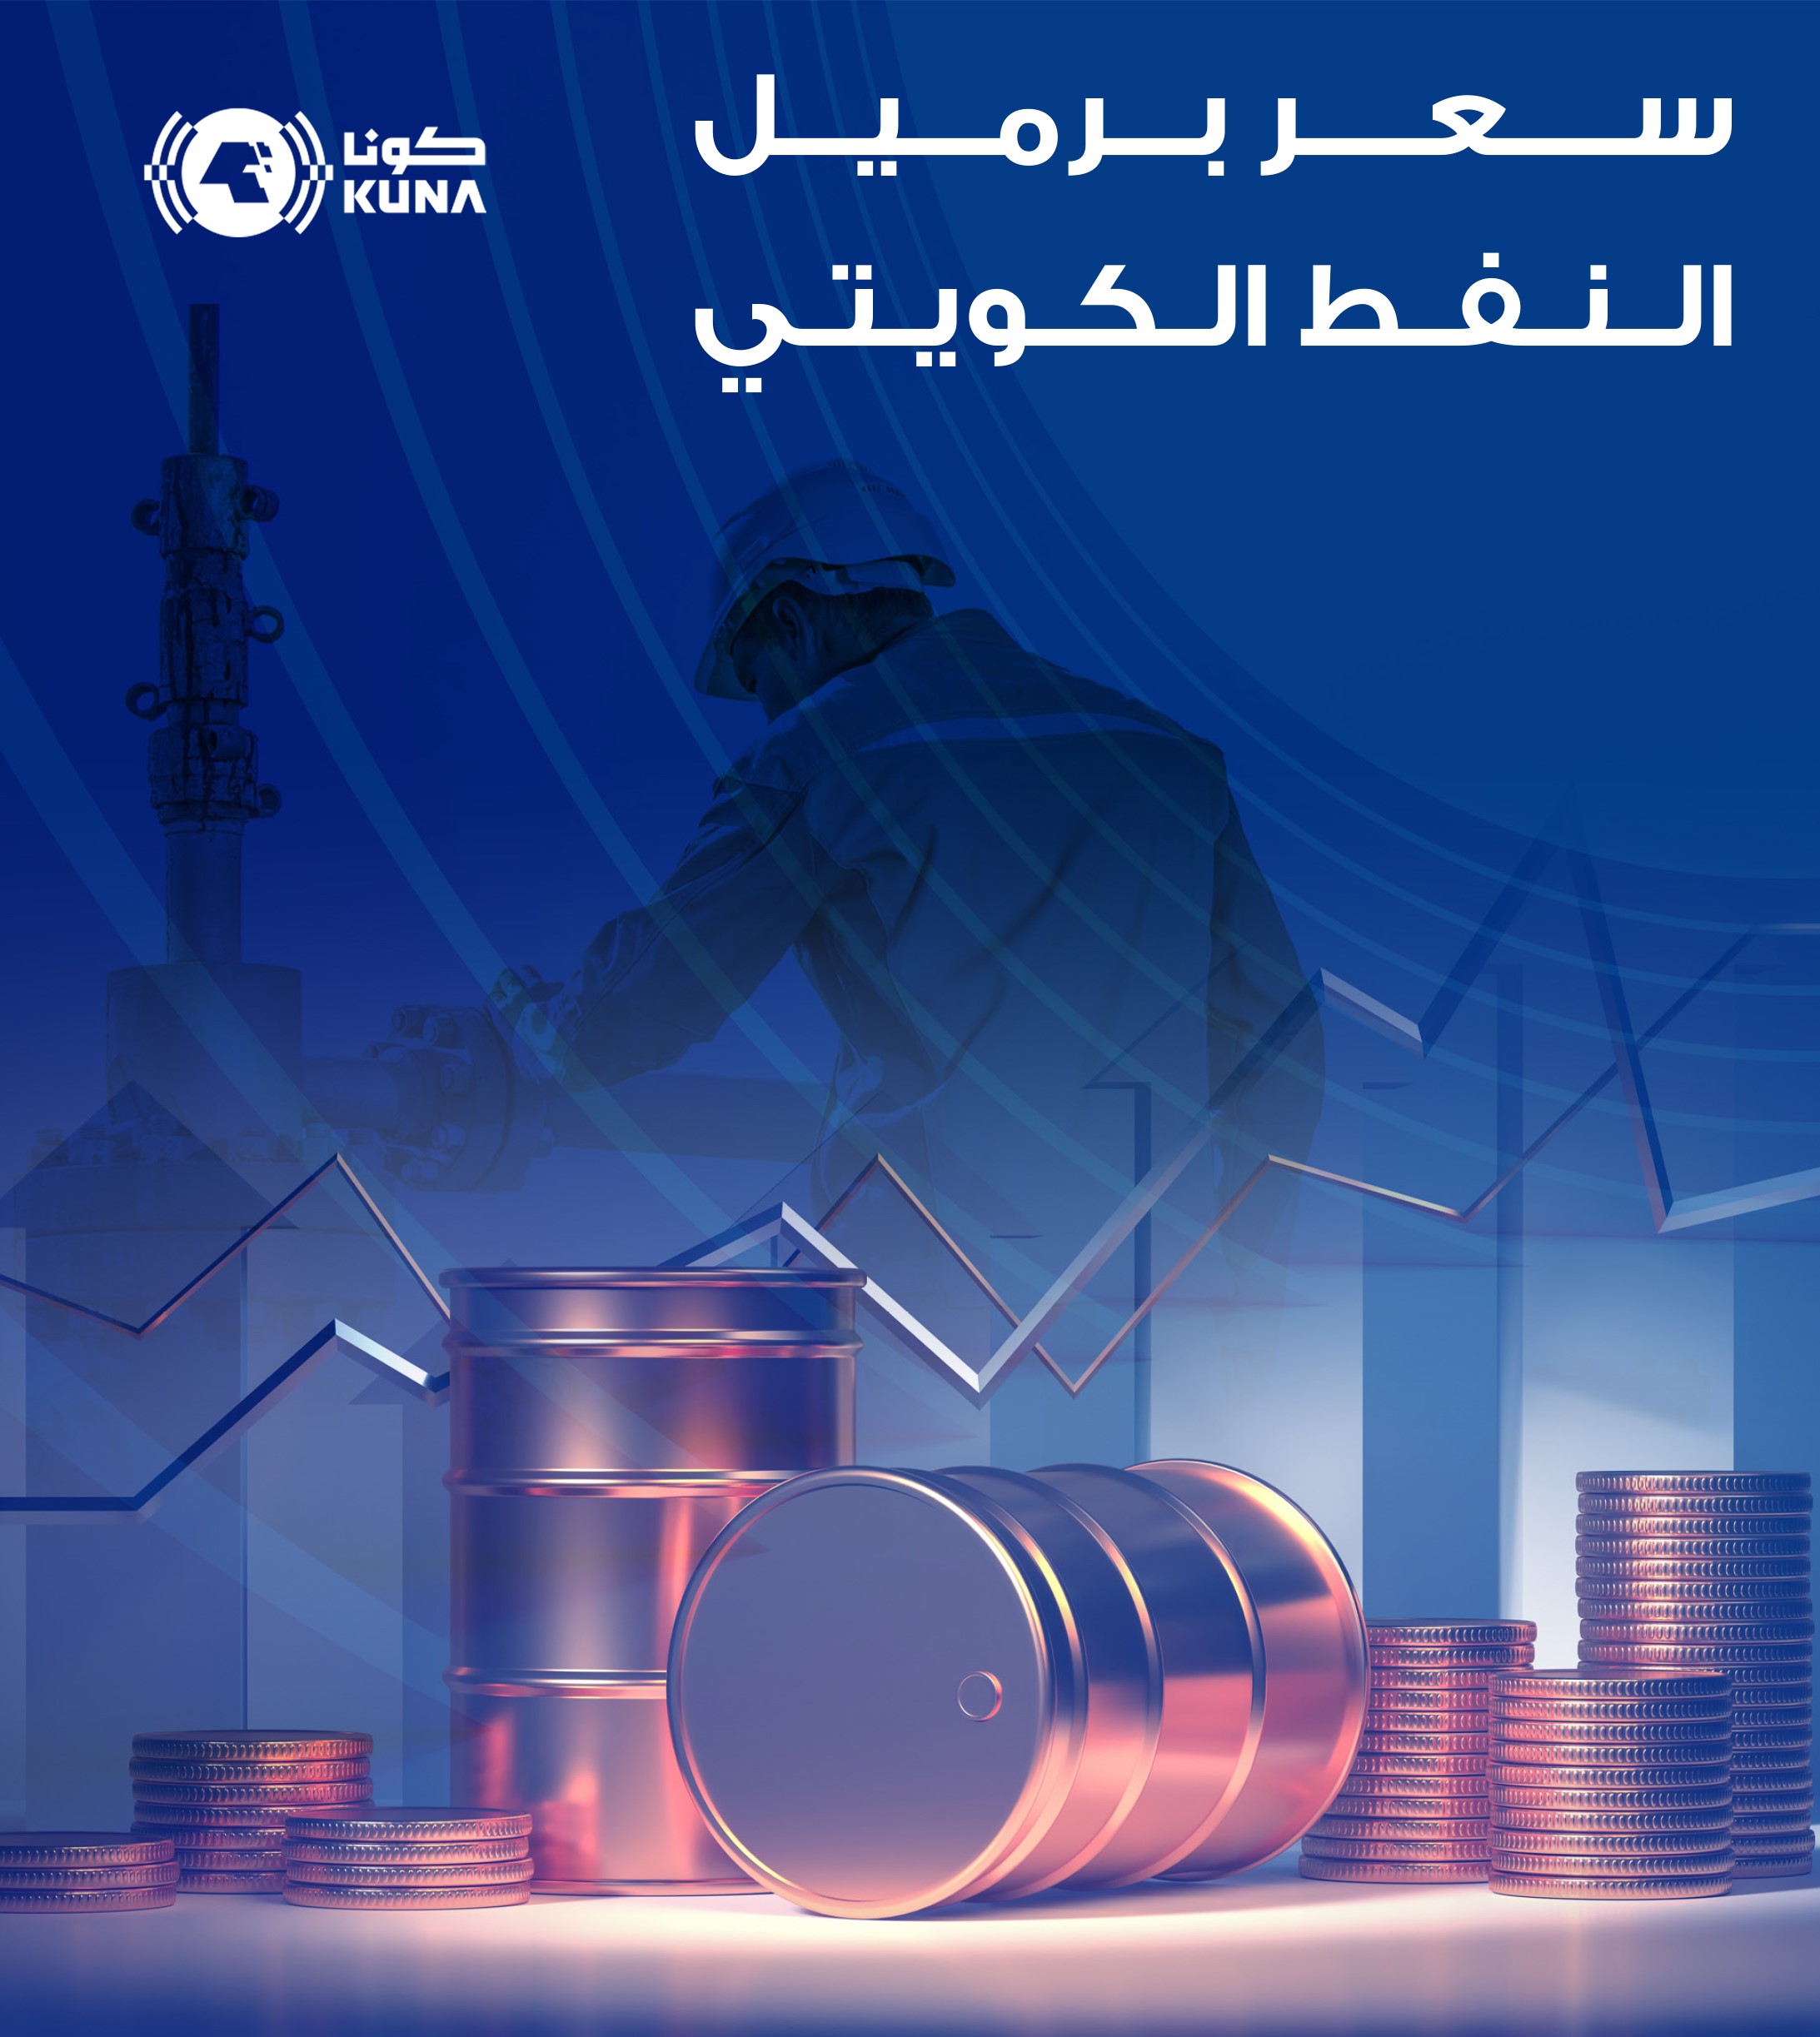 سعر برميل النفط الكويتي ينخفض 1.12 دولار ليبلغ 84.14 دولار